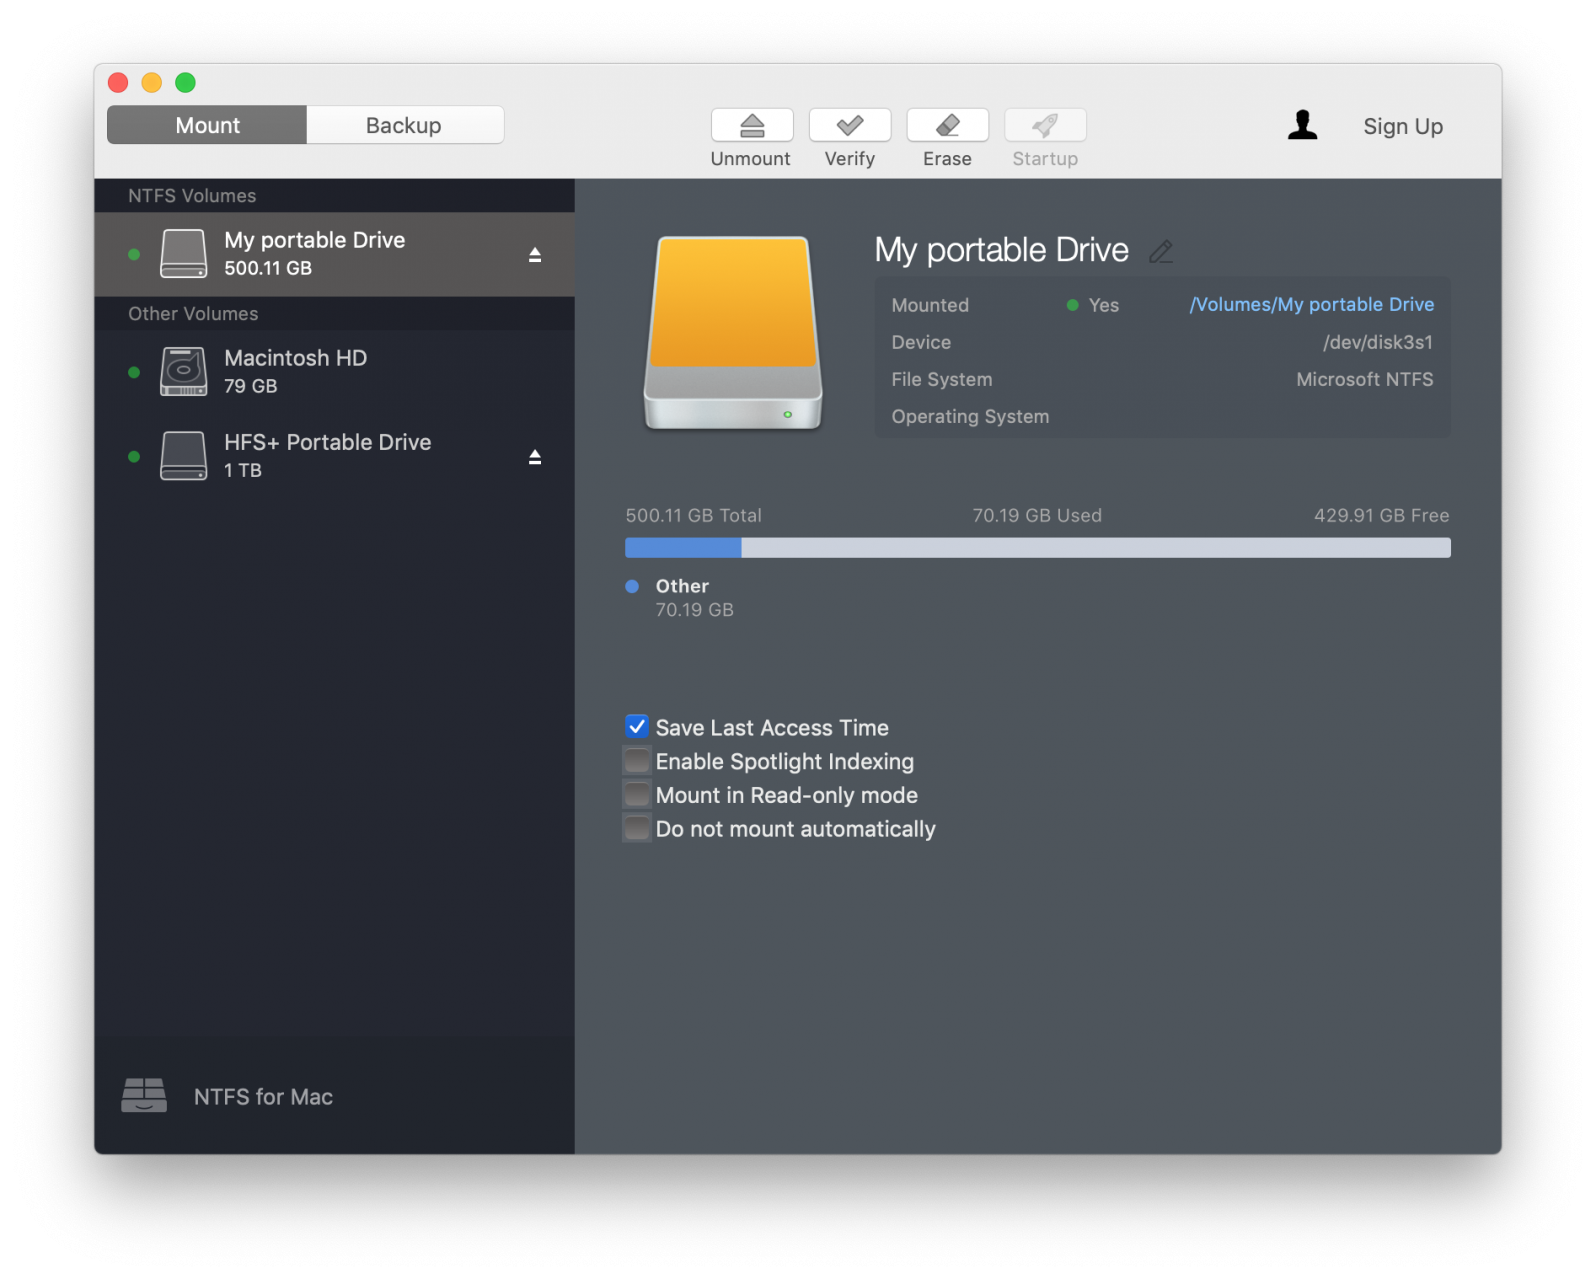 Il nuovo Microsoft NTFS for Mac 17 di Paragon Software consente di effettuare il backup su dischi PC